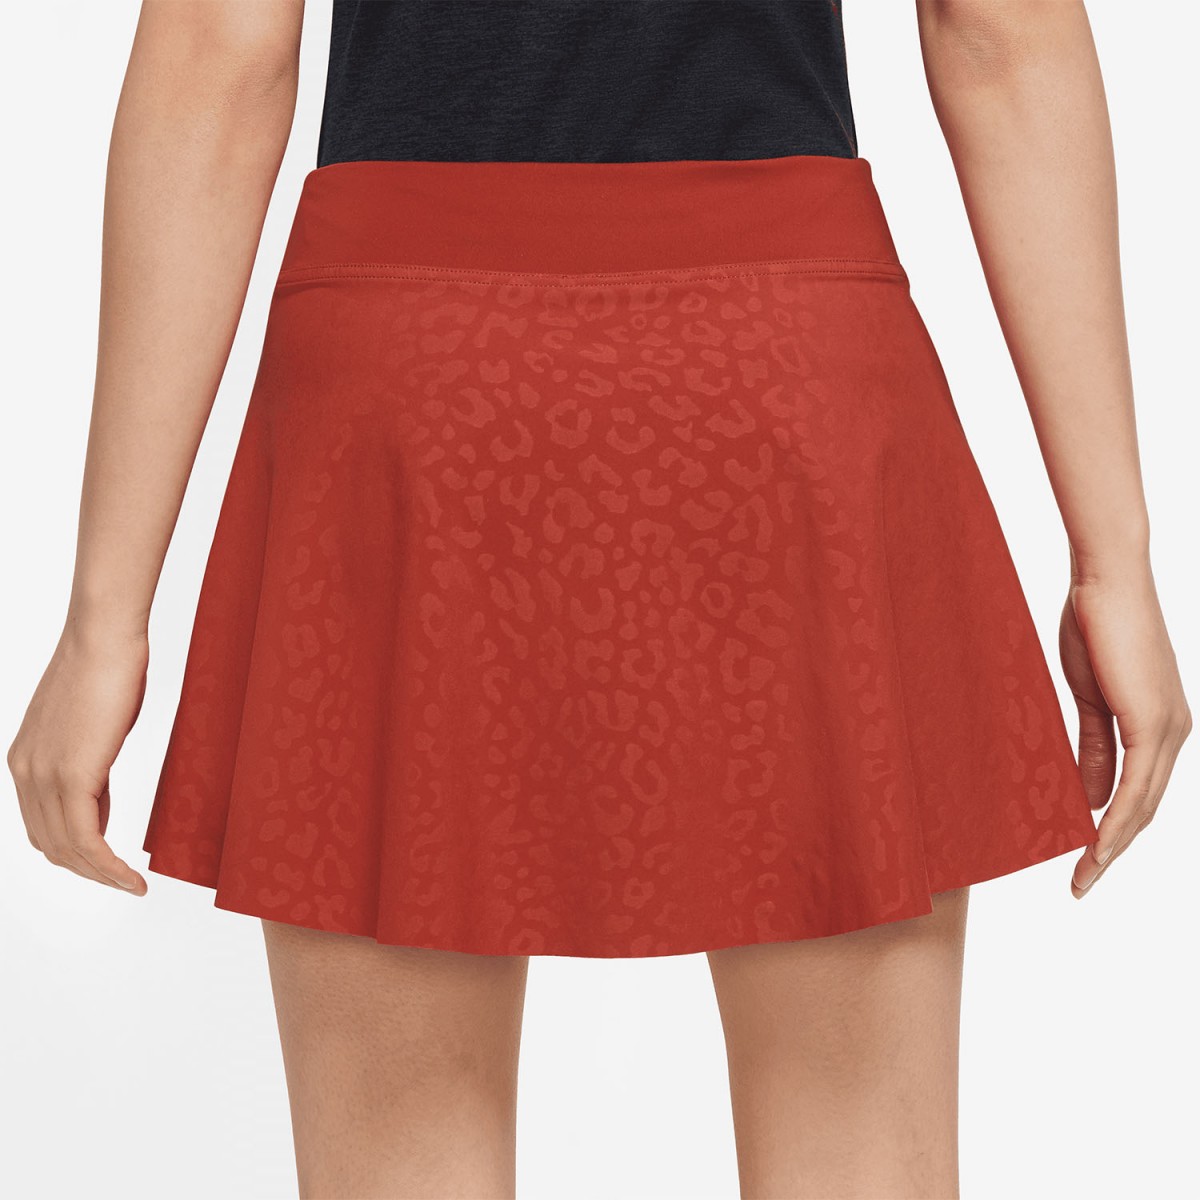 Теннисная юбка женская Nike Printed Club Tennis Skirt cinnabar/black